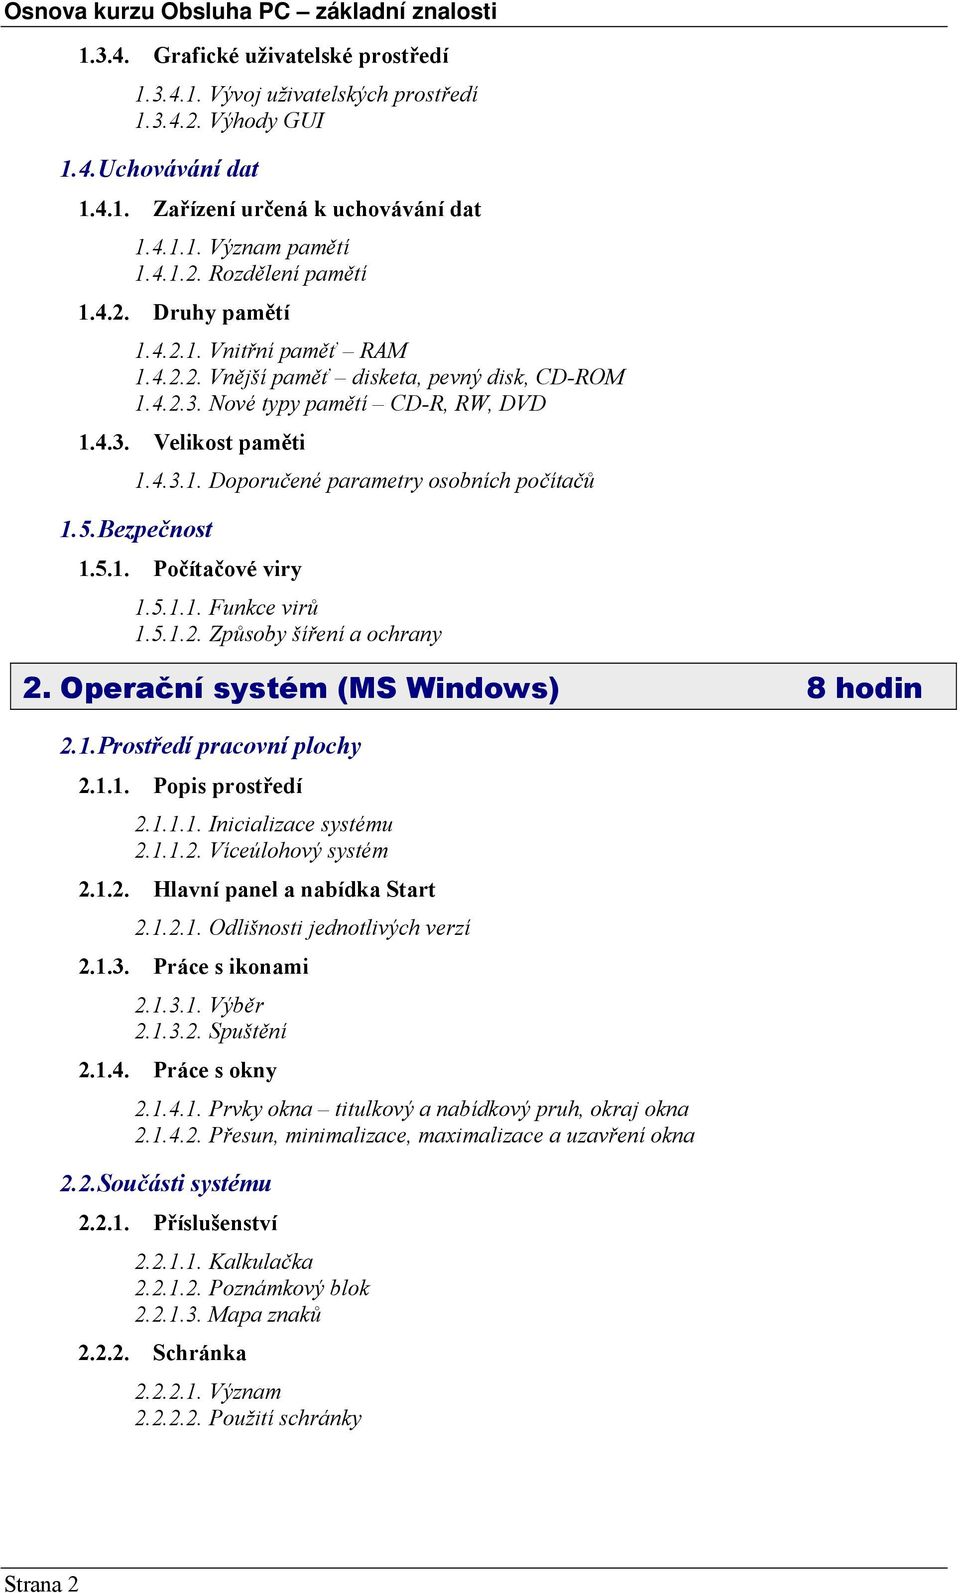 5. Bezpečnost 1.5.1. Počítačové viry 1.5.1.1. Funkce virů 1.5.1.2. Způsoby šíření a ochrany 2. Operační systém (MS Windows) 8 hodin 2.1. Prostředí pracovní plochy 2.1.1. Popis prostředí 2.1.1.1. Inicializace systému 2.